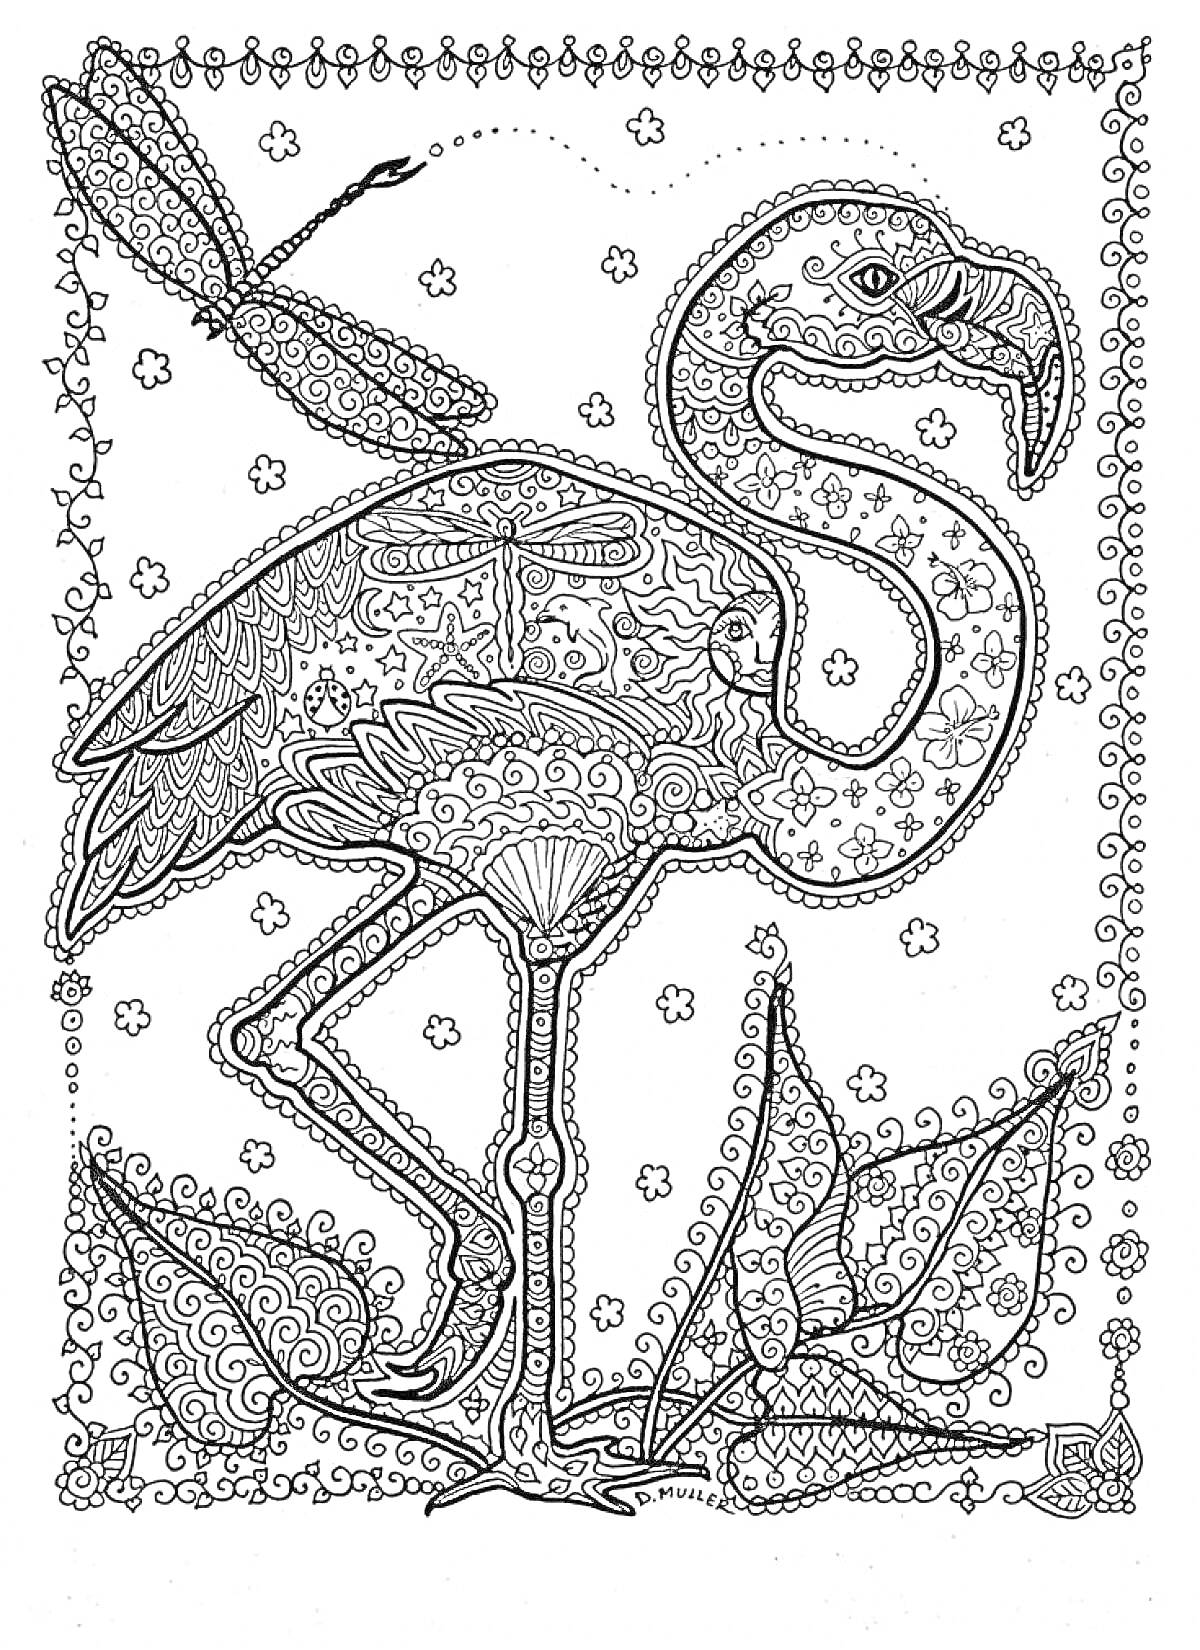 Раскраска Антистресс раскраска с фламинго, змеёй, стрекозой, цветами, узорами и декоративной рамкой